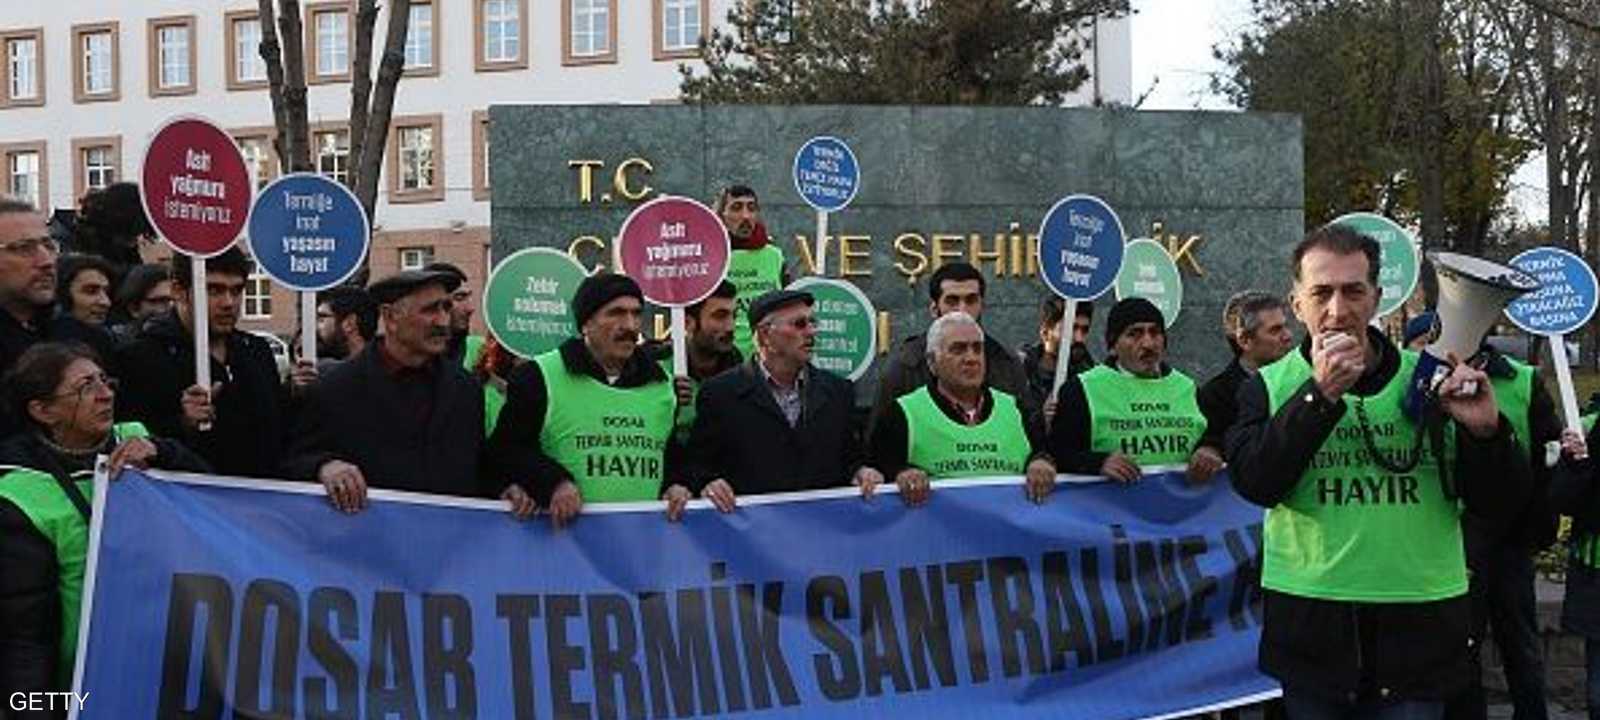 سكان مدينة بورصة التركية وناشطون من دعاة البيئة يعترضون على المحطة النووية التركية الأولى في البلاد